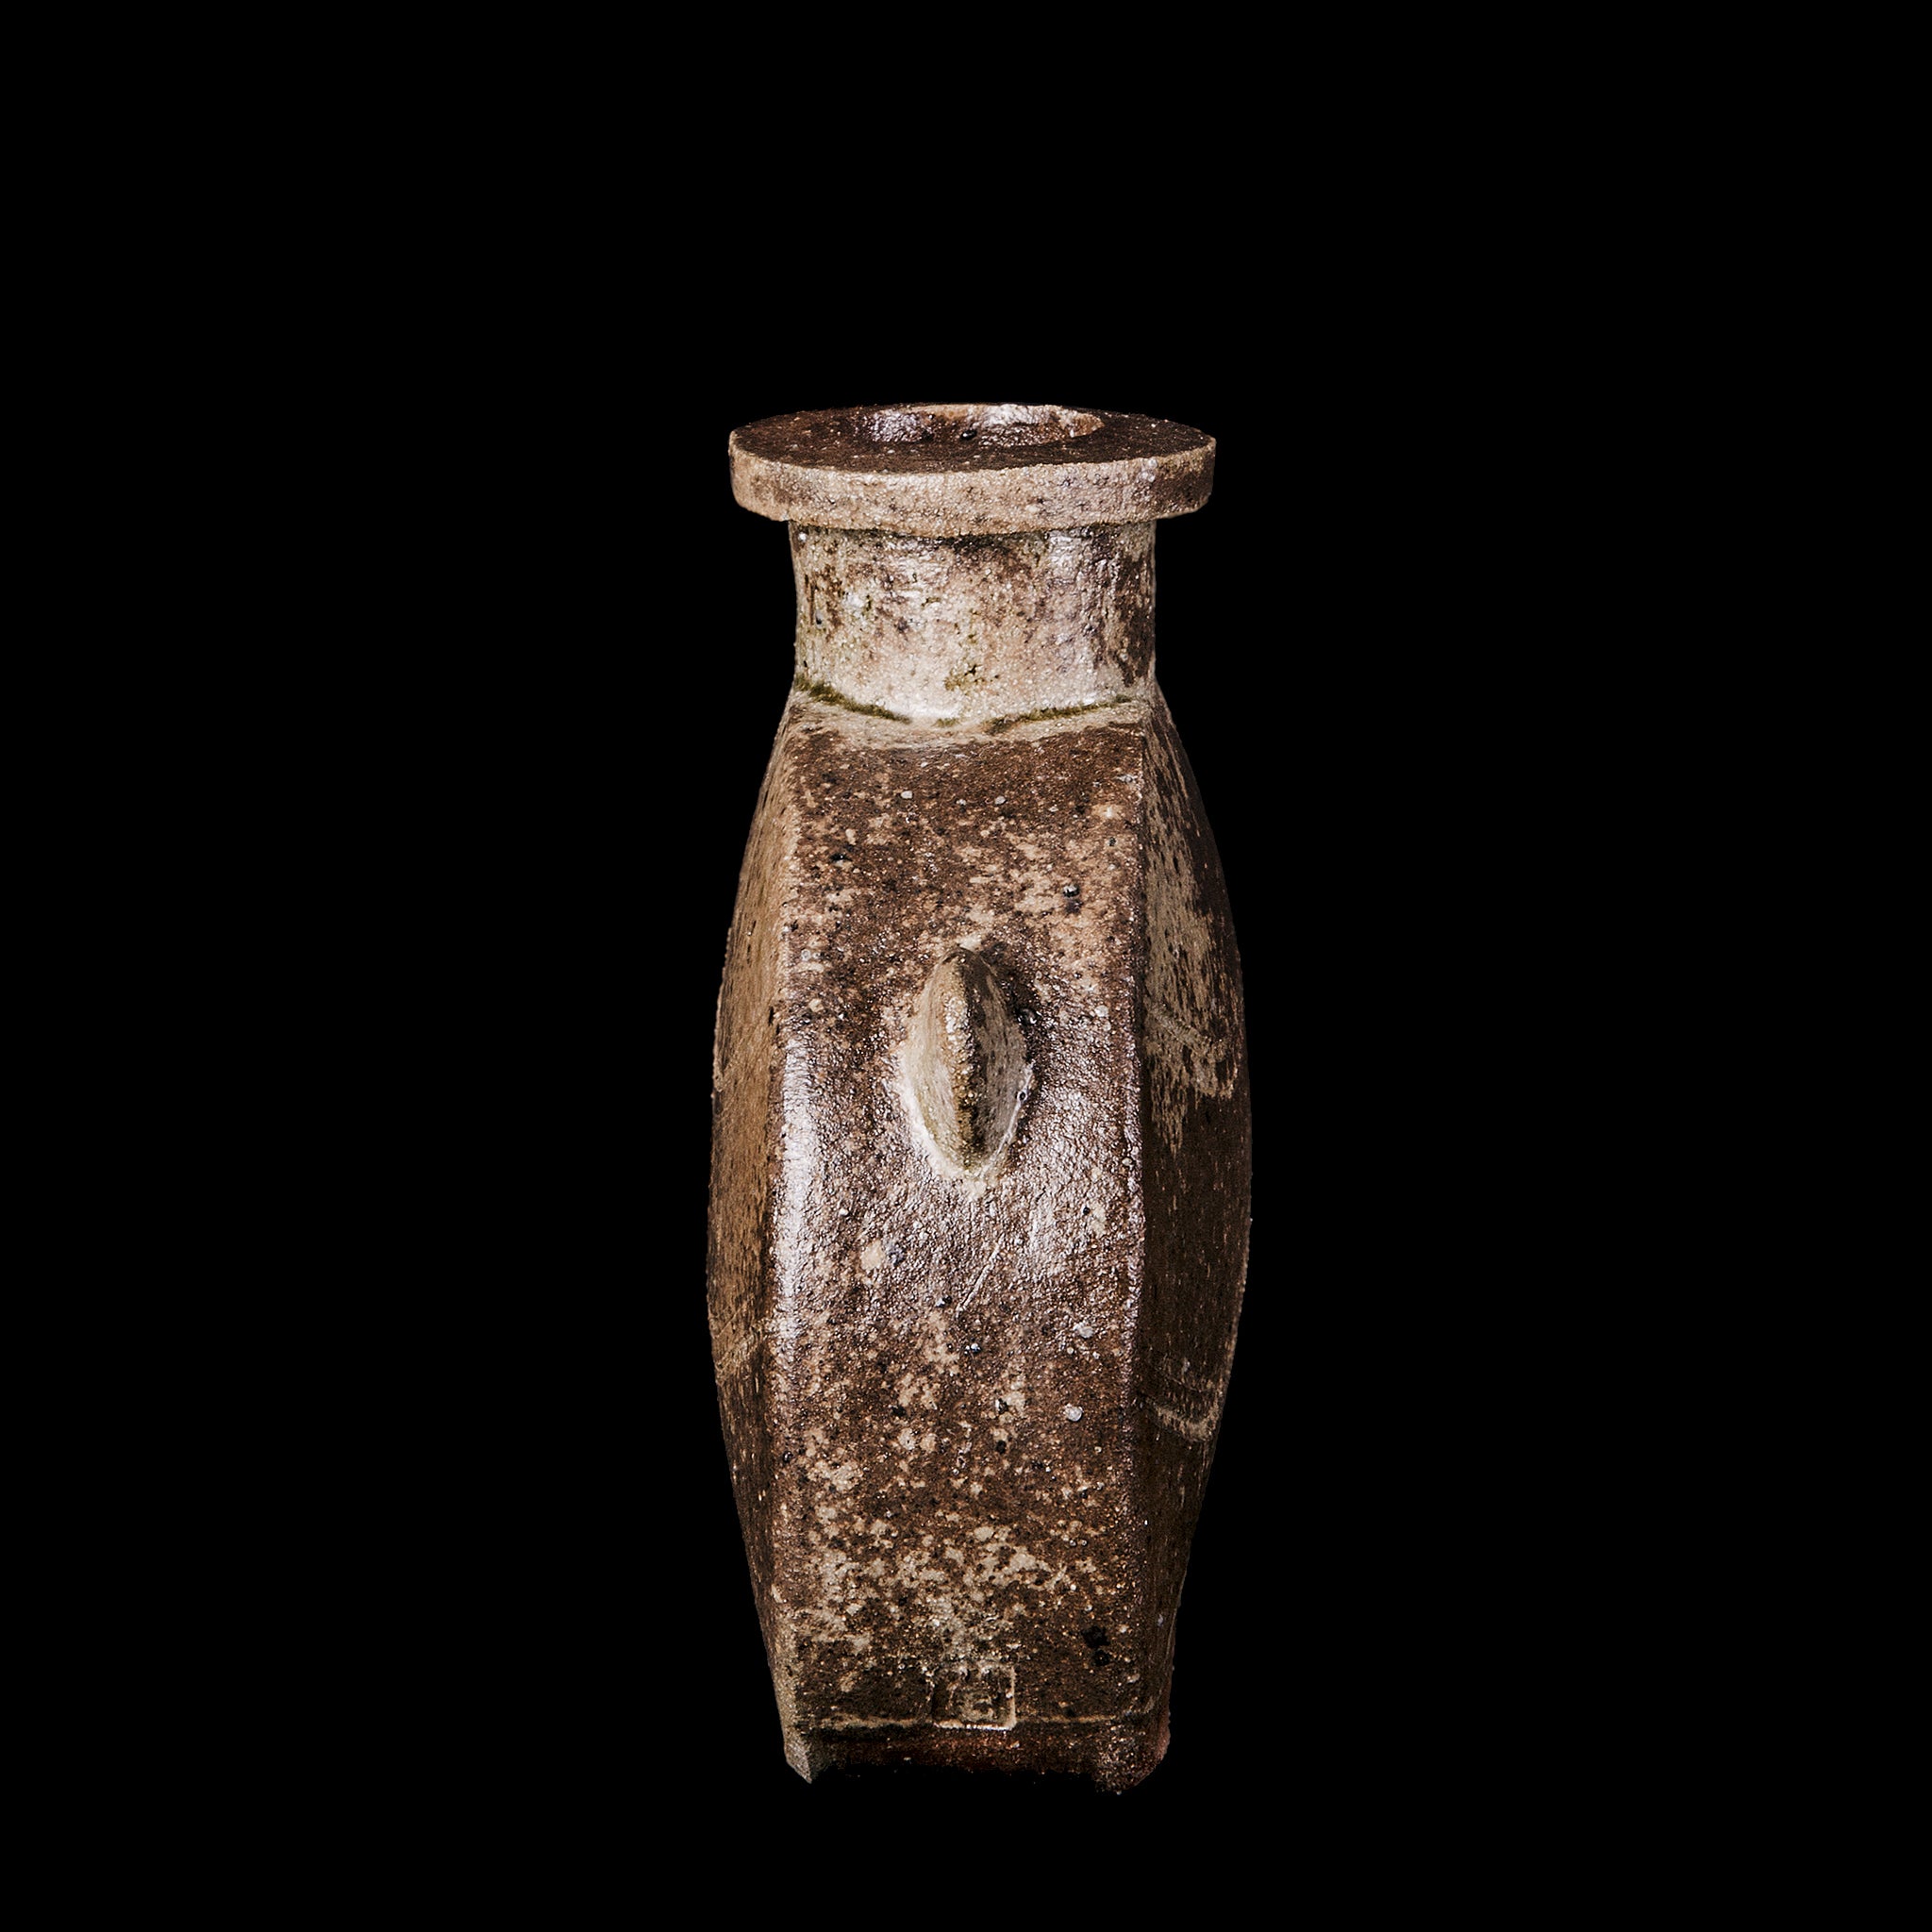 Vase No.130/22